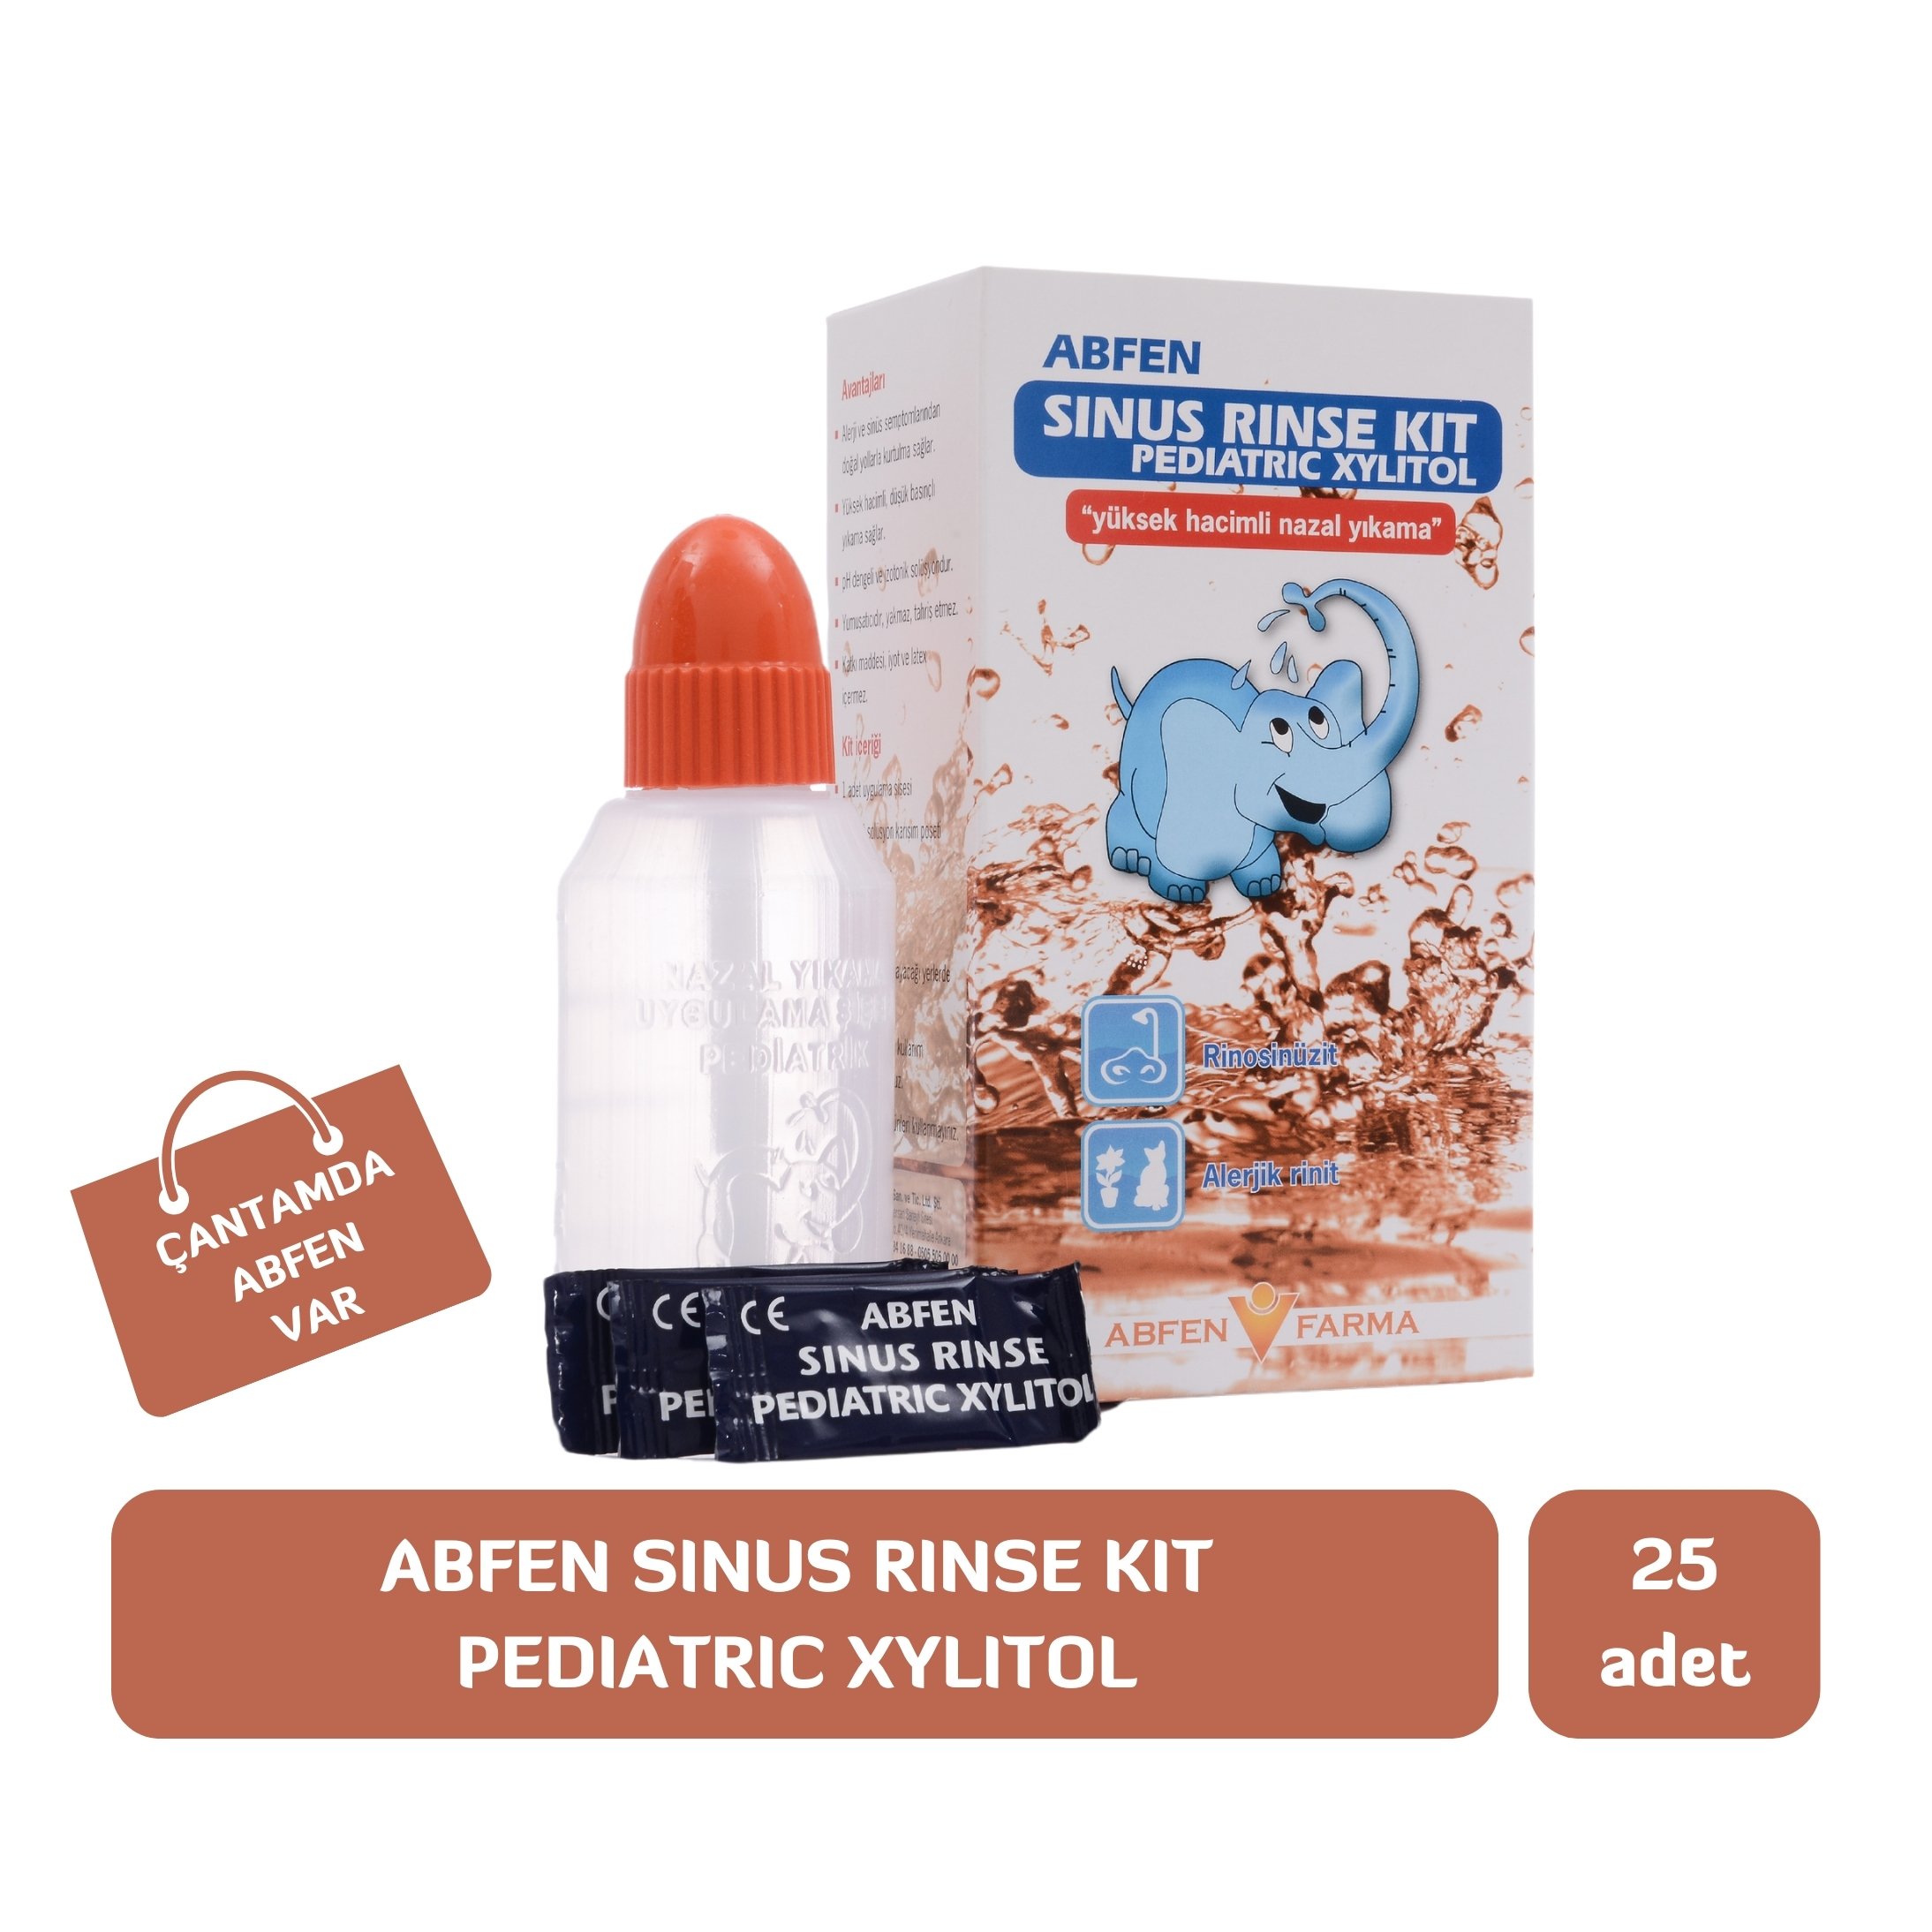 Abfen Sinus Rinse Pediatric Xylitol Burun Yıkama Kiti 25 Adet